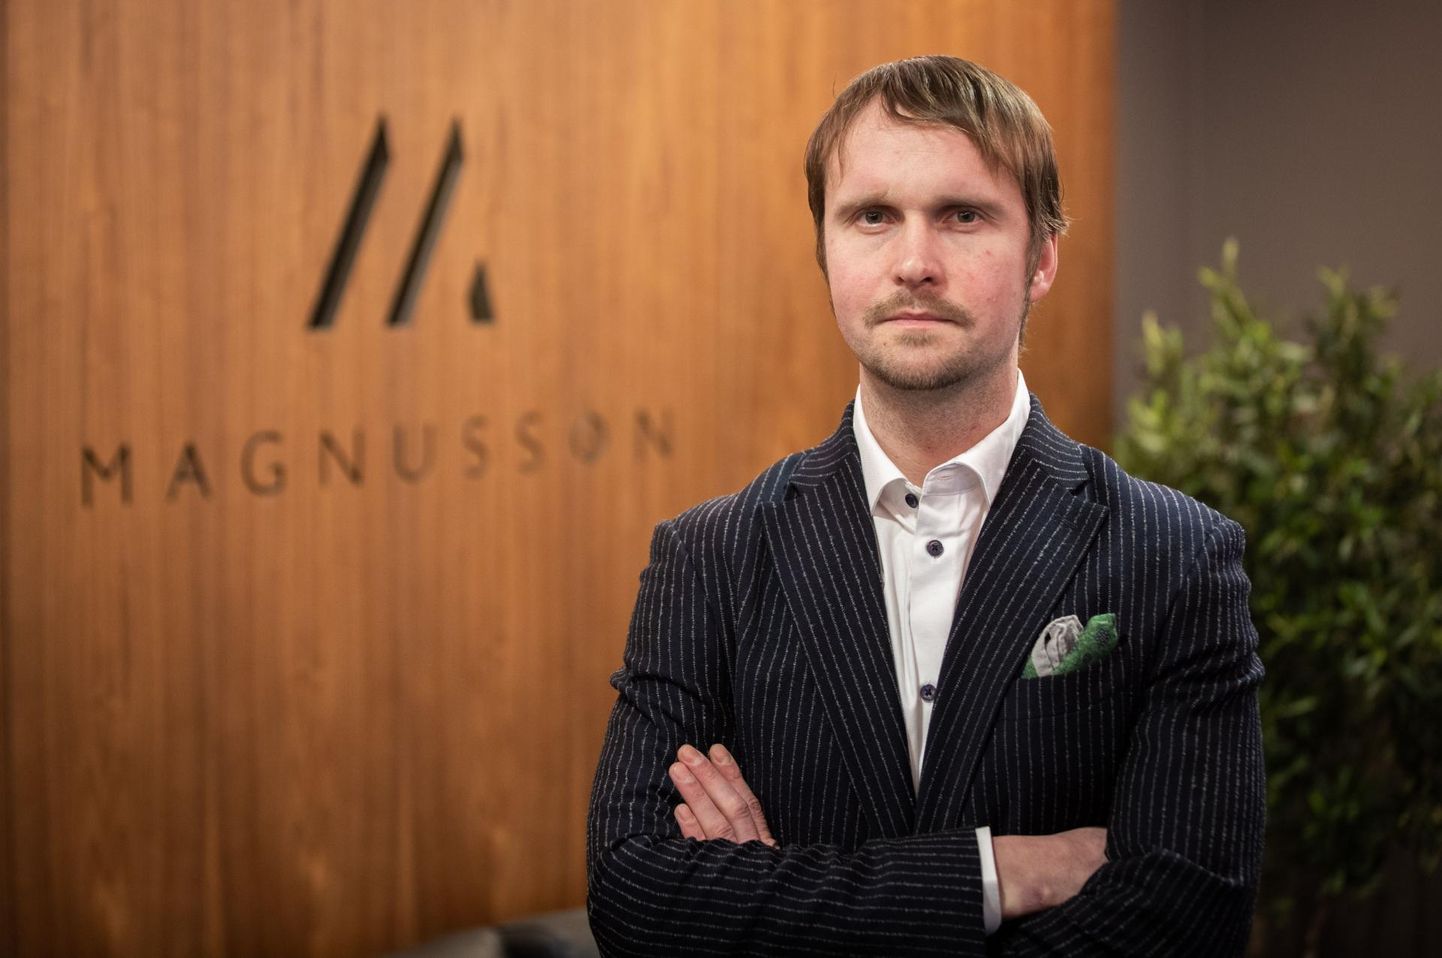 Magnussoni büroo advokaadi Denis Piskunovi sõnul oli Envestio kelmuste puhul tegemist klassikalise petuskeemiga.